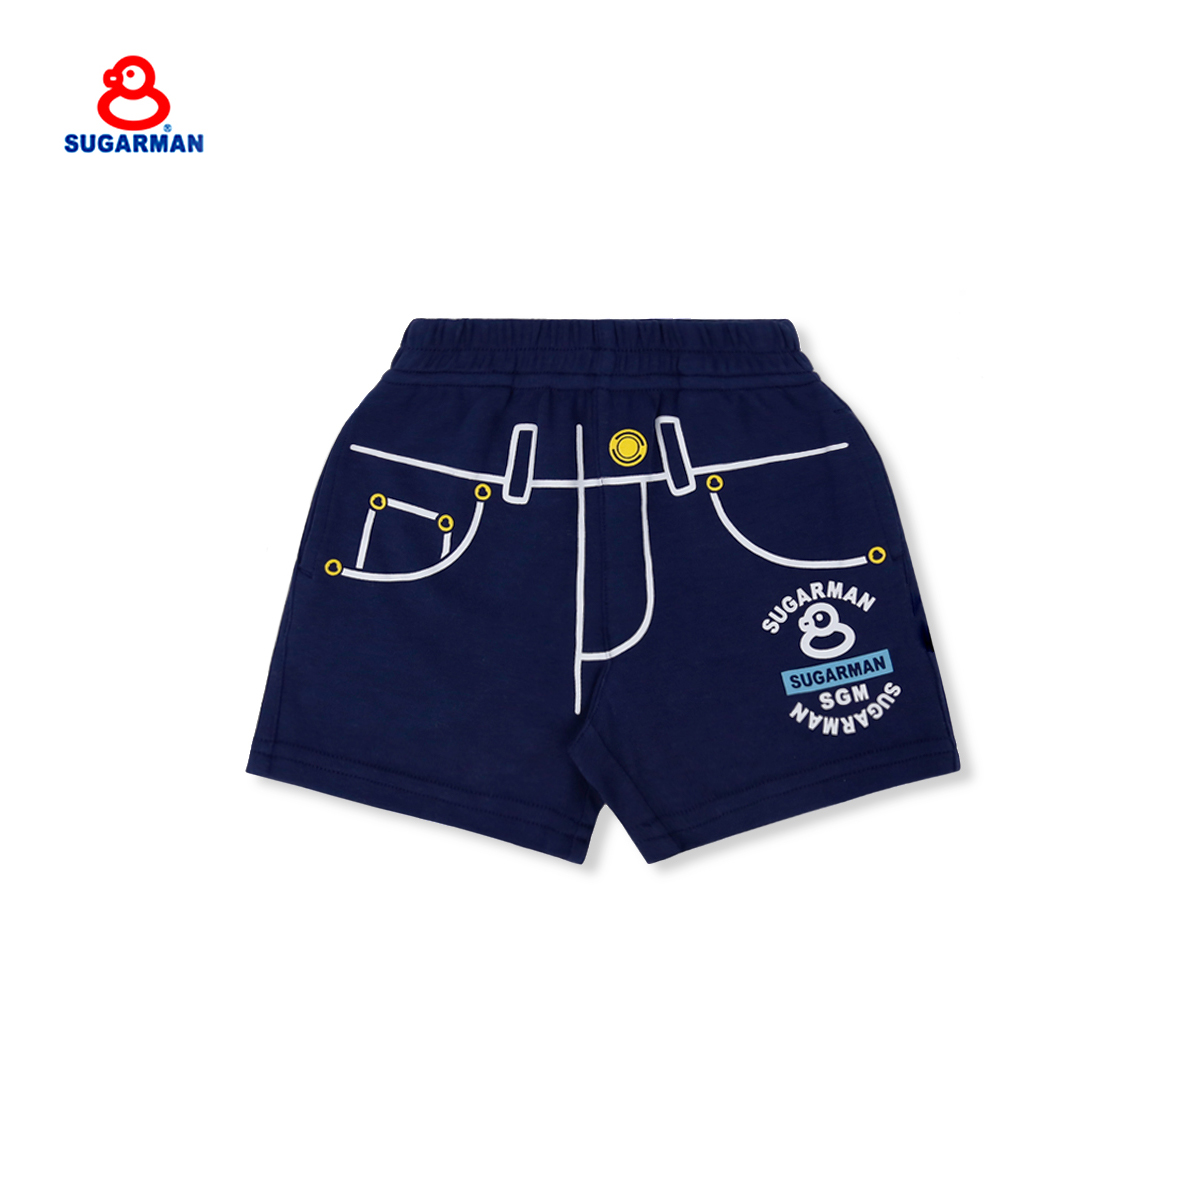 SUGARMAN香港品牌糖人小黄鸭新款假裝印花造型男女同款婴儿短裤